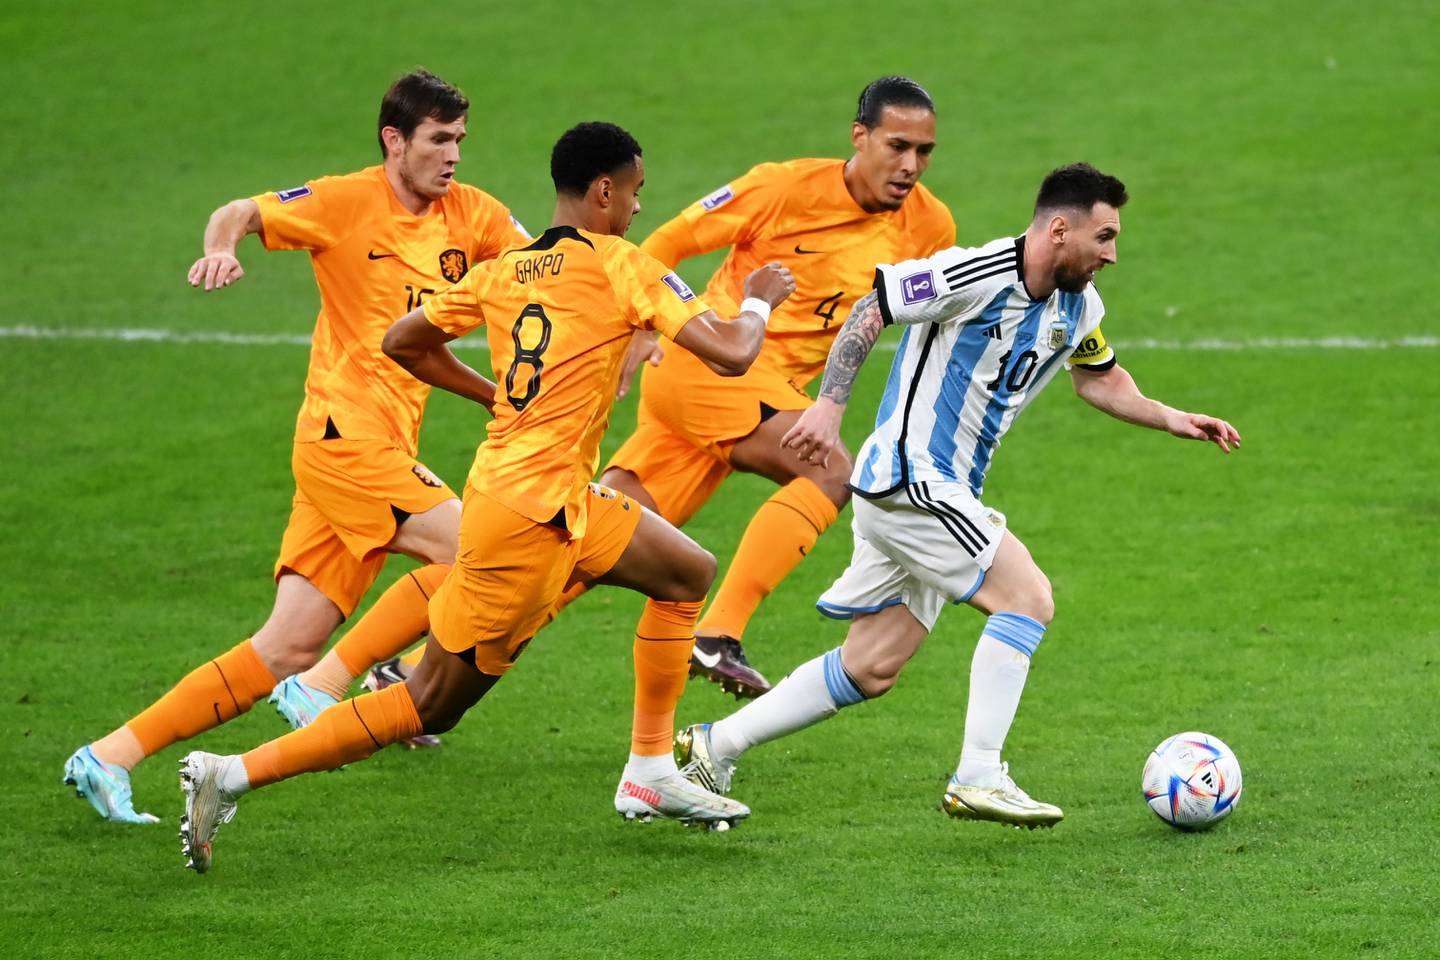 De la mano de Messi, el seleccionado eliminó por penales a Países Bajos en cuartos de final